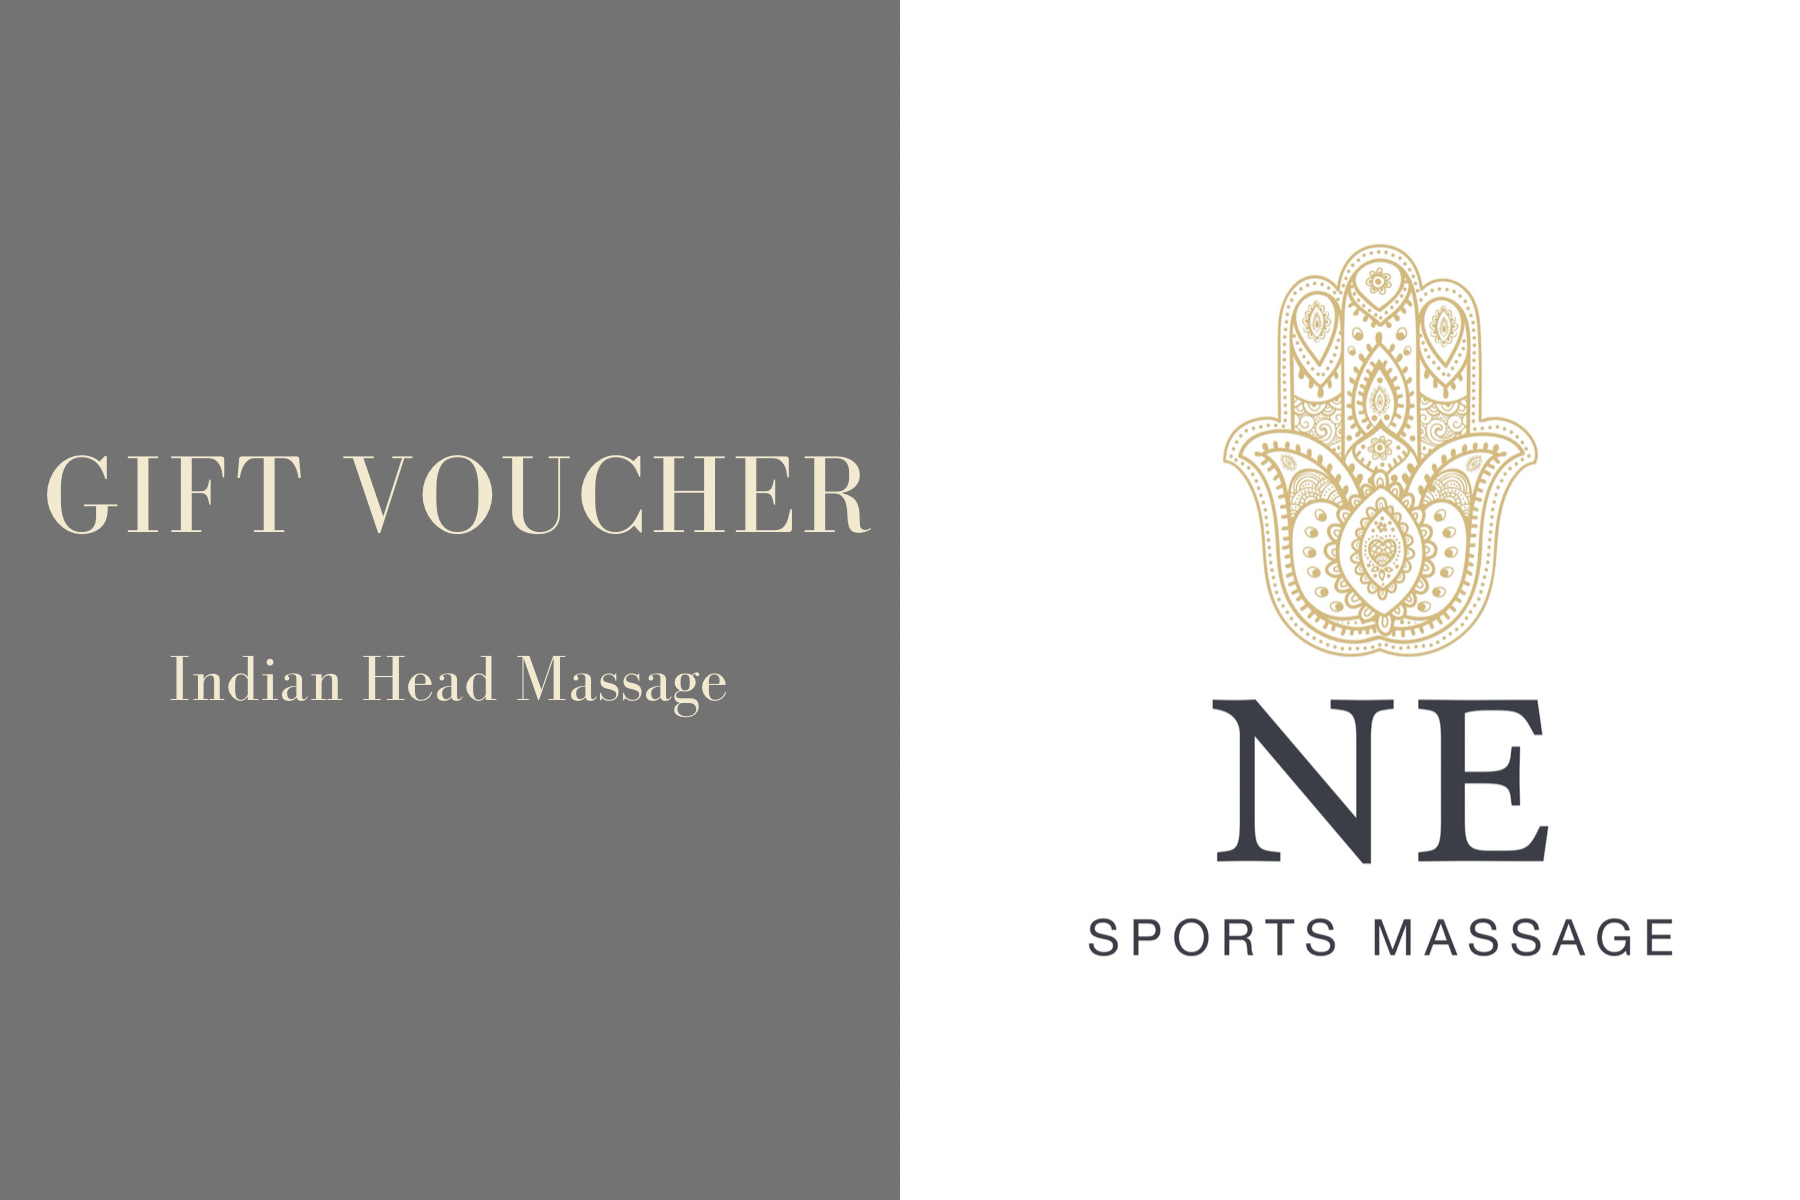 Indian Head Massage Voucher Ne Sports Massage Shop 0557